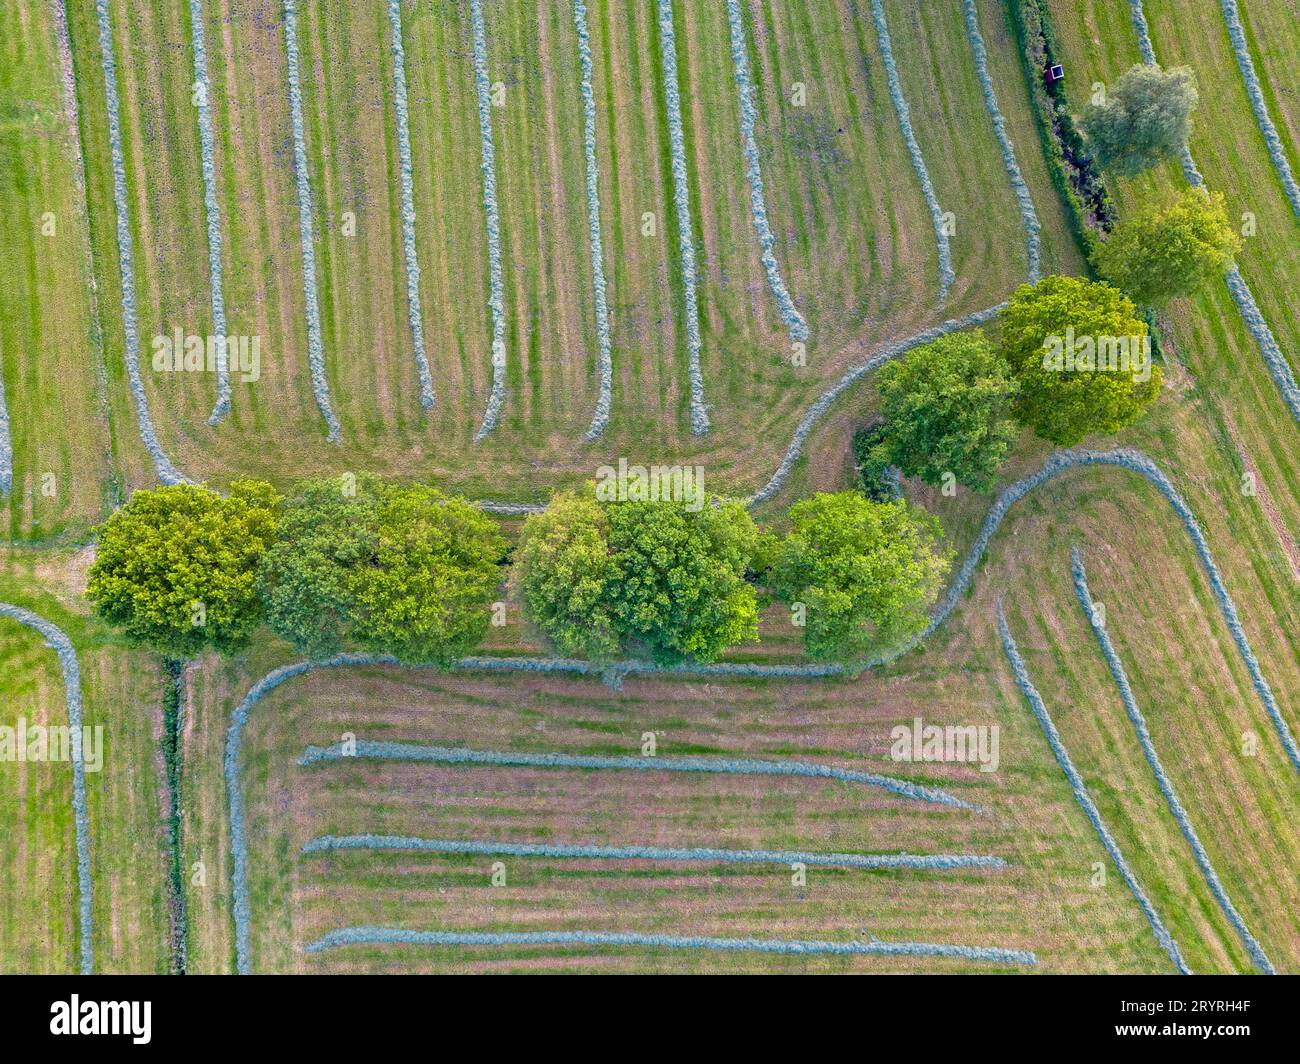 Motifs colorés dans les champs de culture aux terres agricoles, vue aérienne, photo drone. Formes géométriques abstraites des parcelles agricoles de dif Banque D'Images